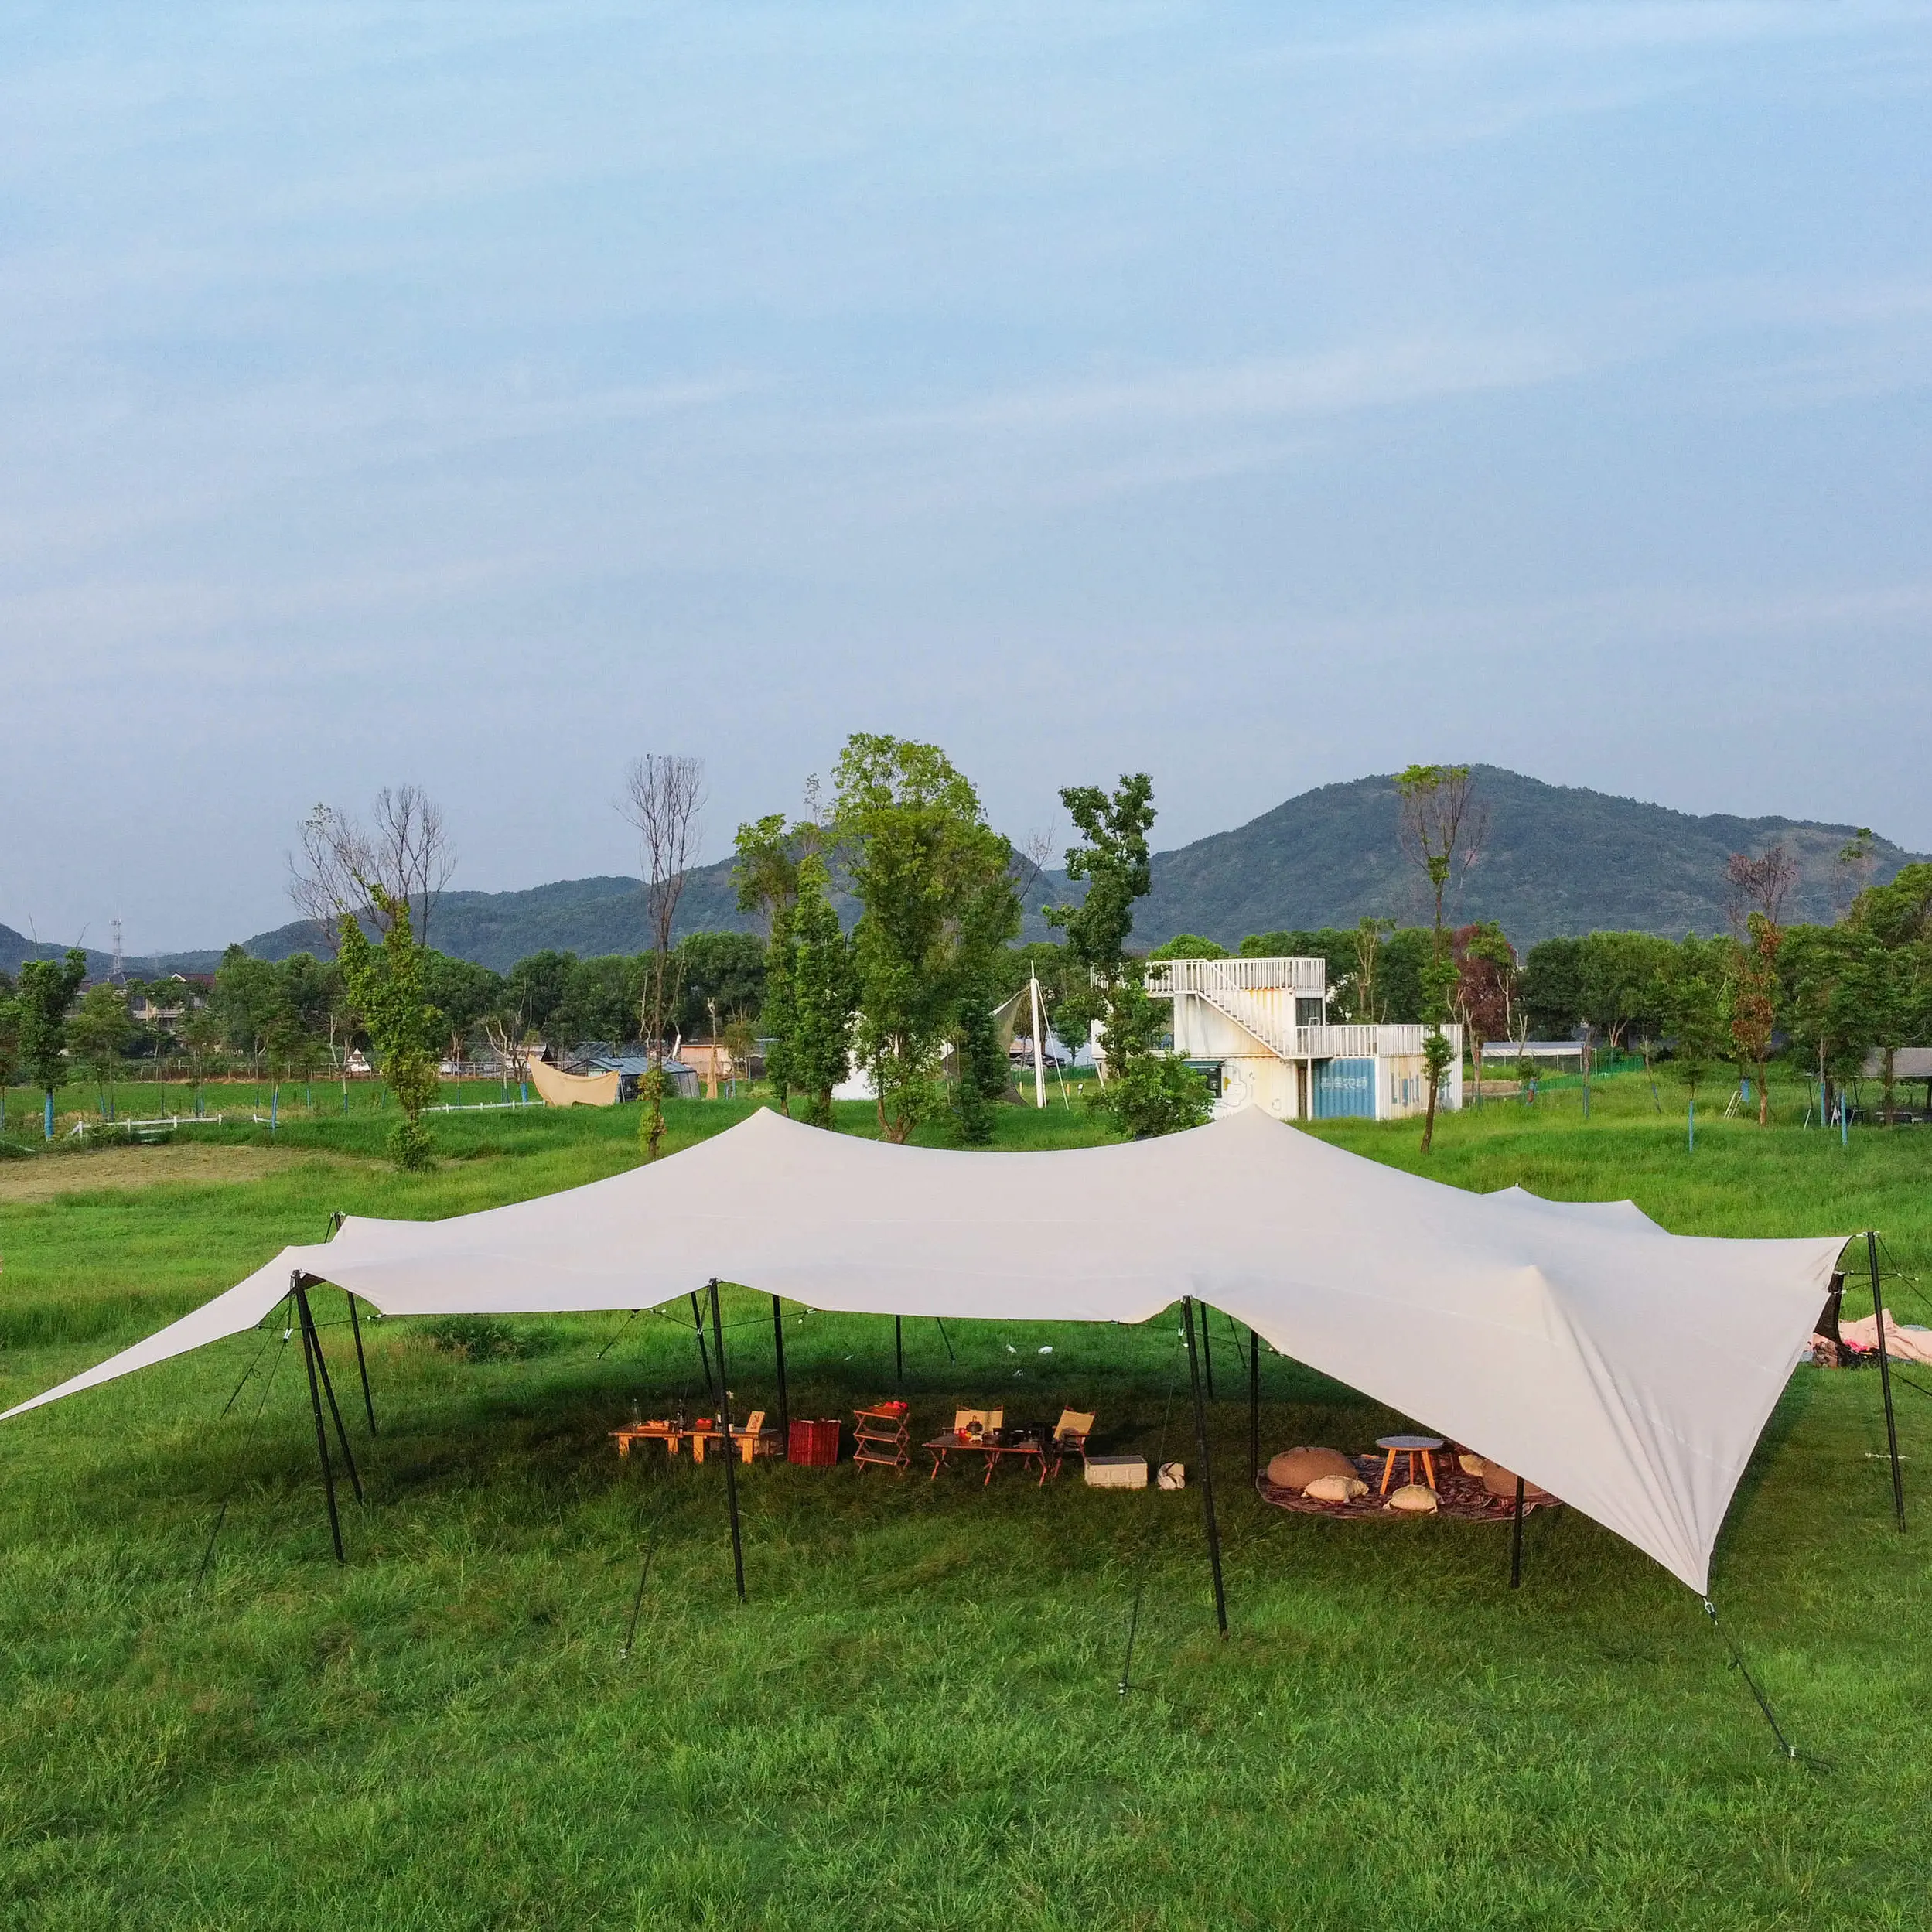 Carpas elásticas impermeables de PVC de 10x15m para acampar al aire libre de alta resistencia de lujo para eventos y bodas